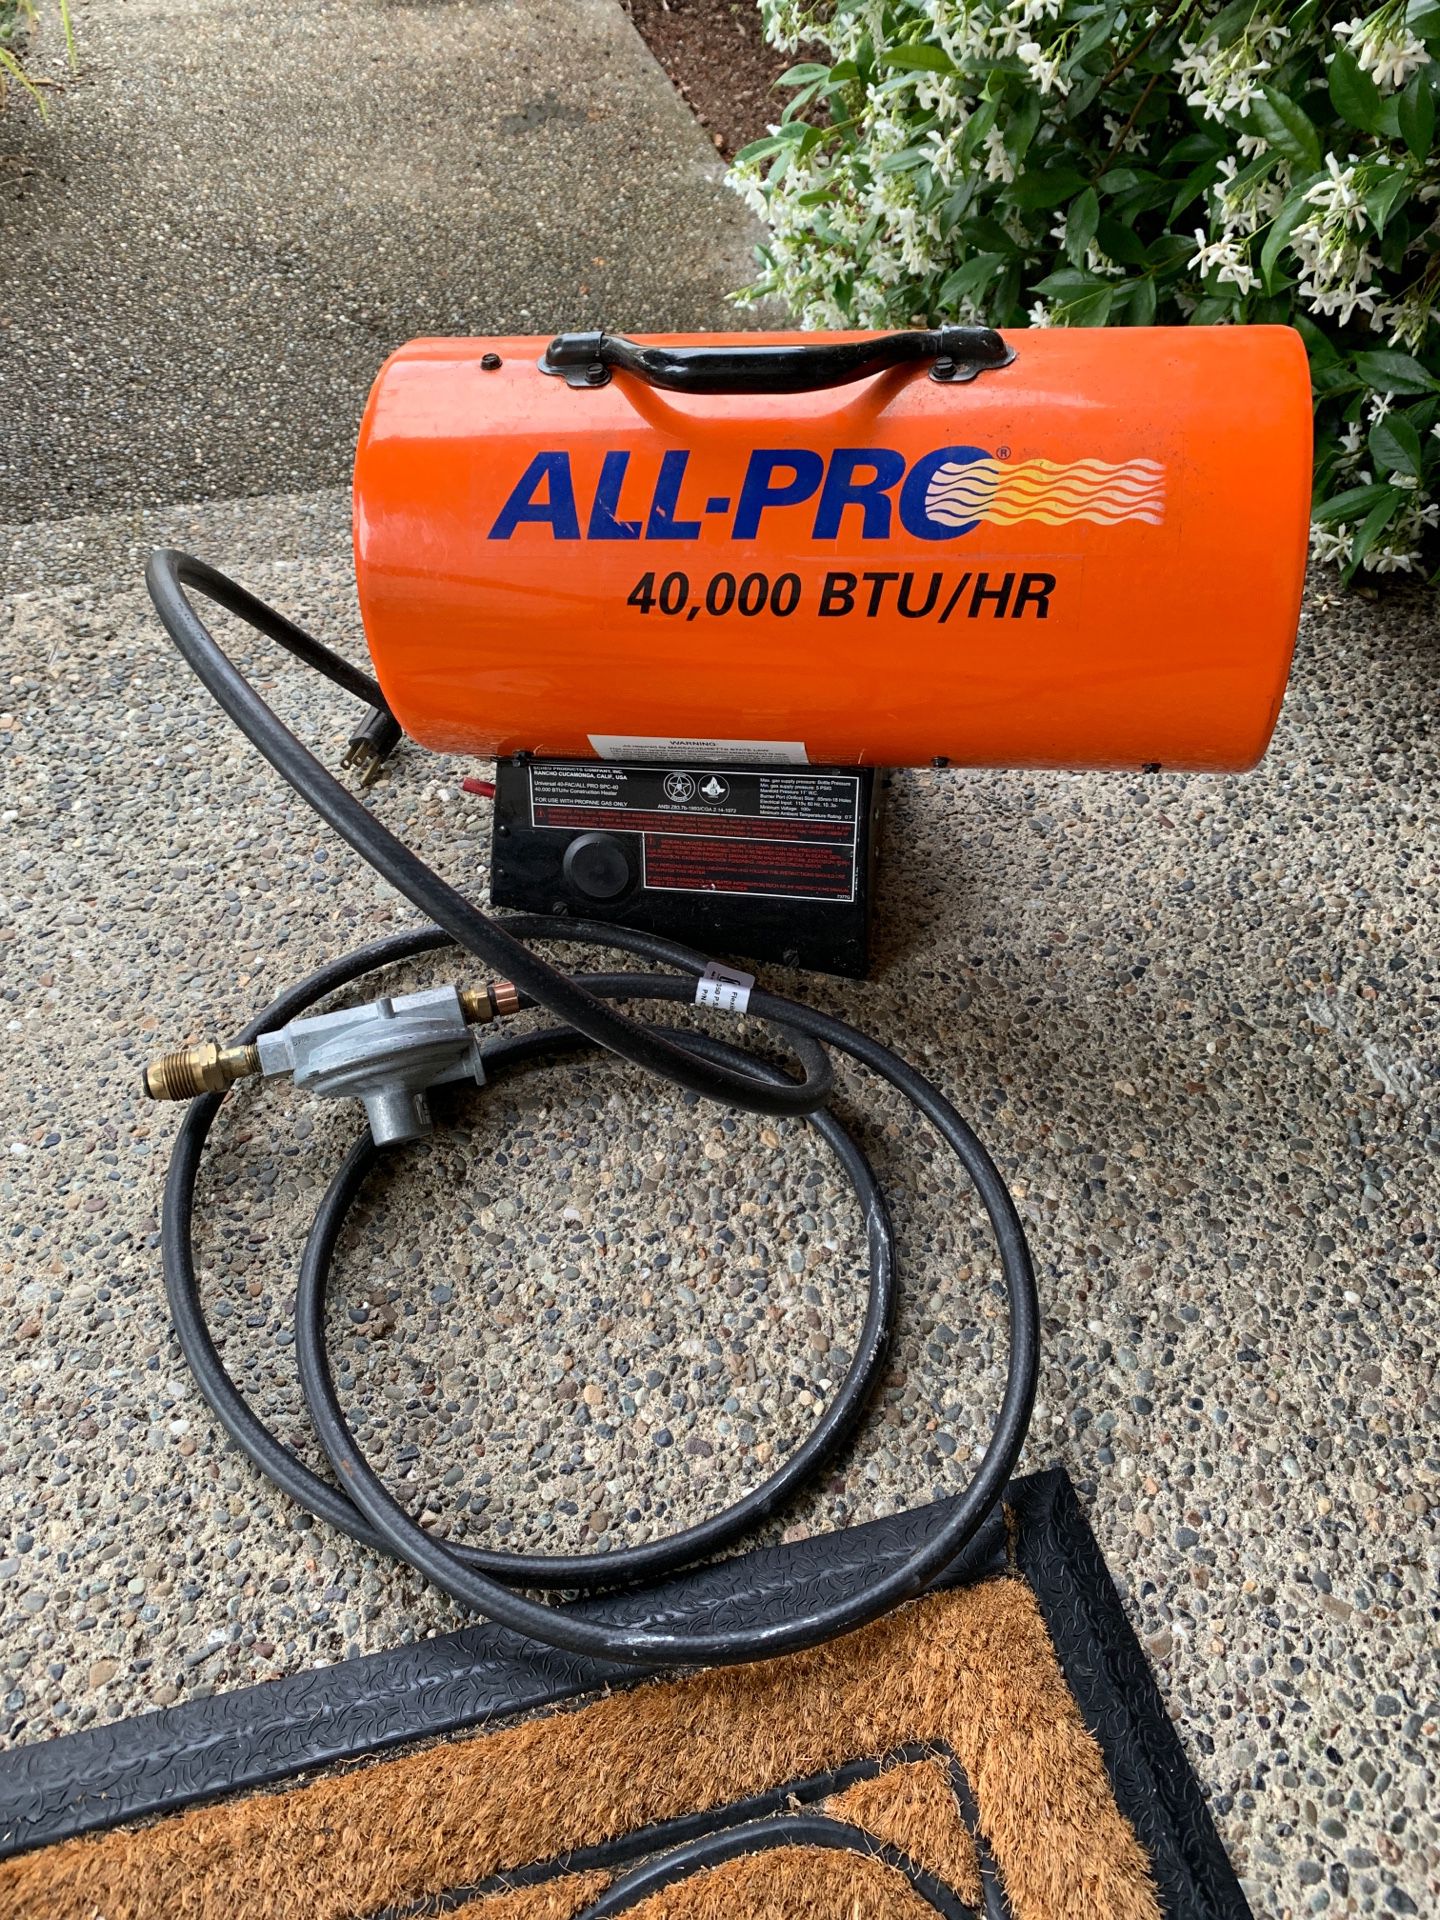 All-Pro 40,000 BTU/HR propane heater